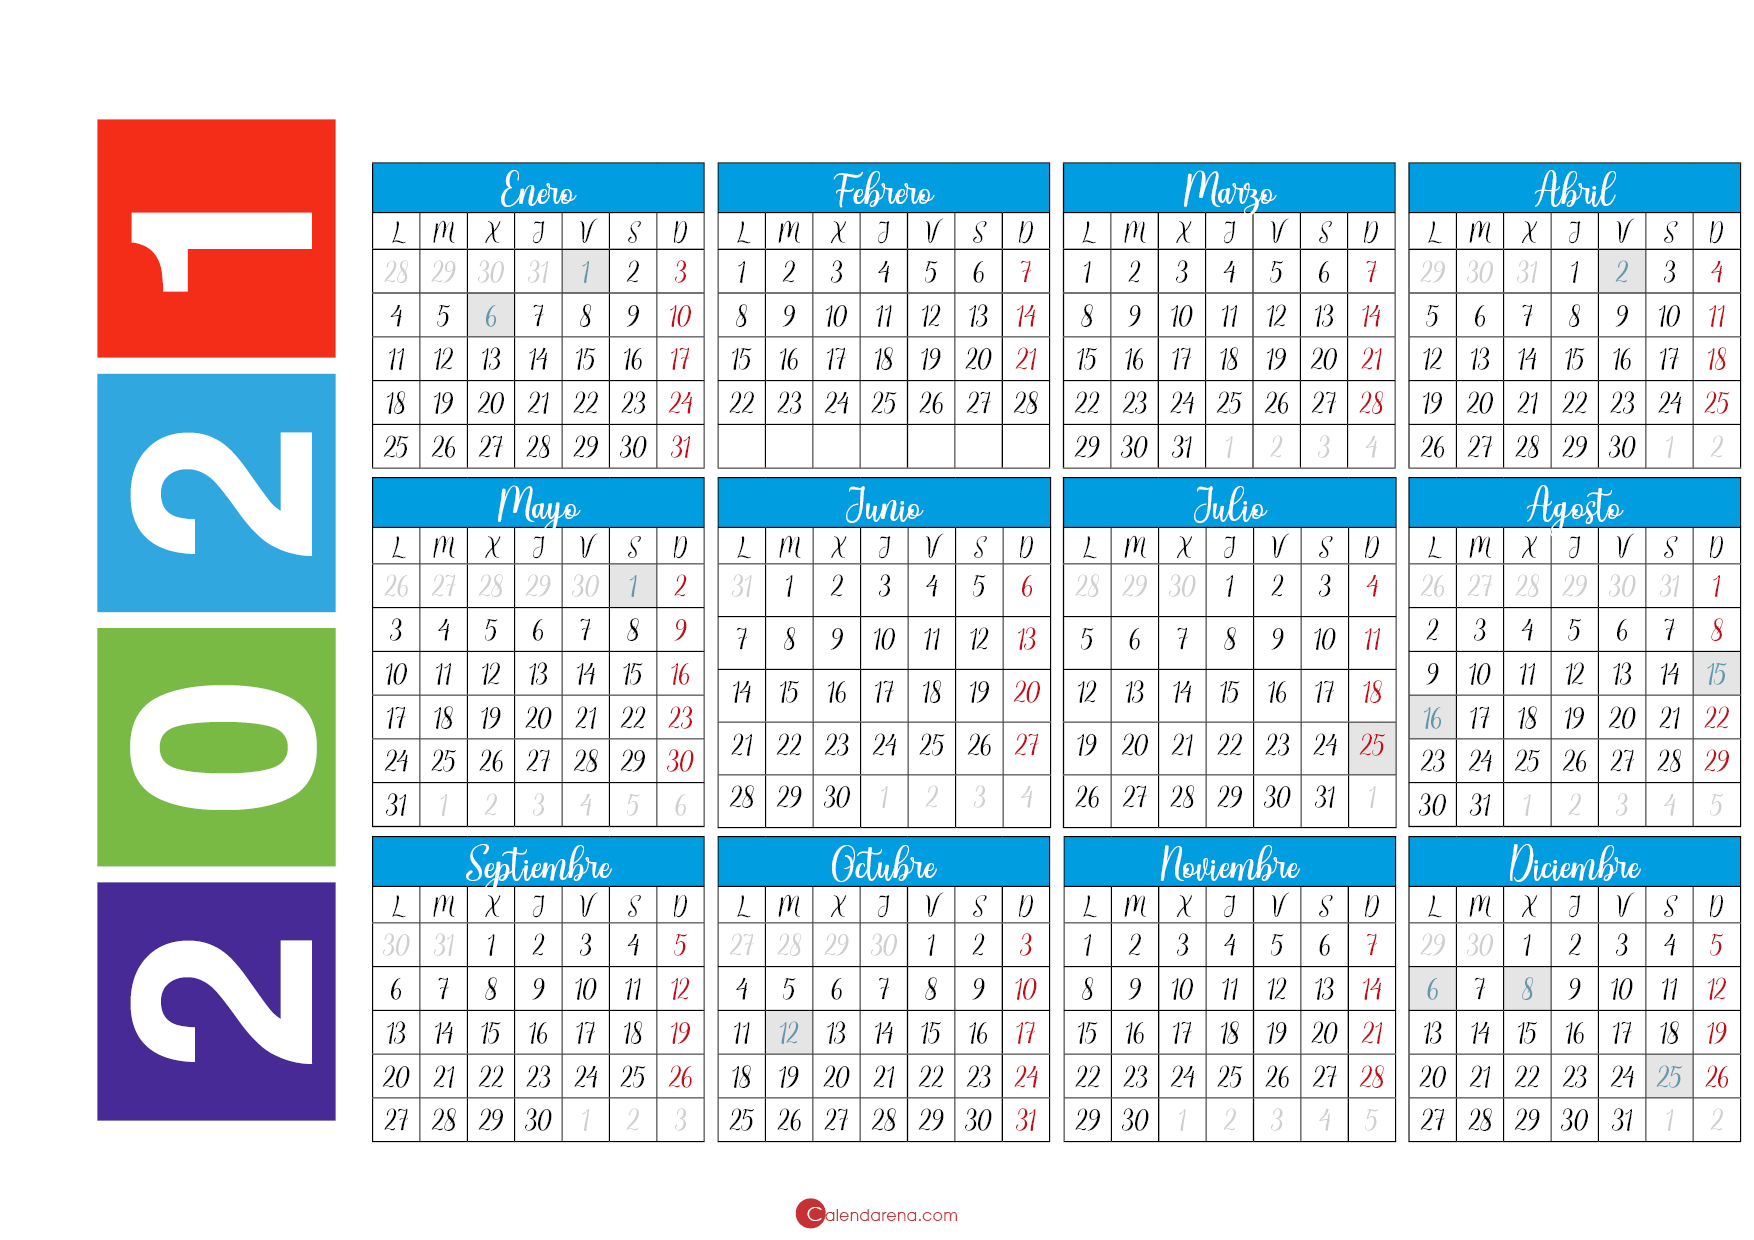 Calendario 2021 Psd Calendario Para Photoshop Bonito Para Imprimir